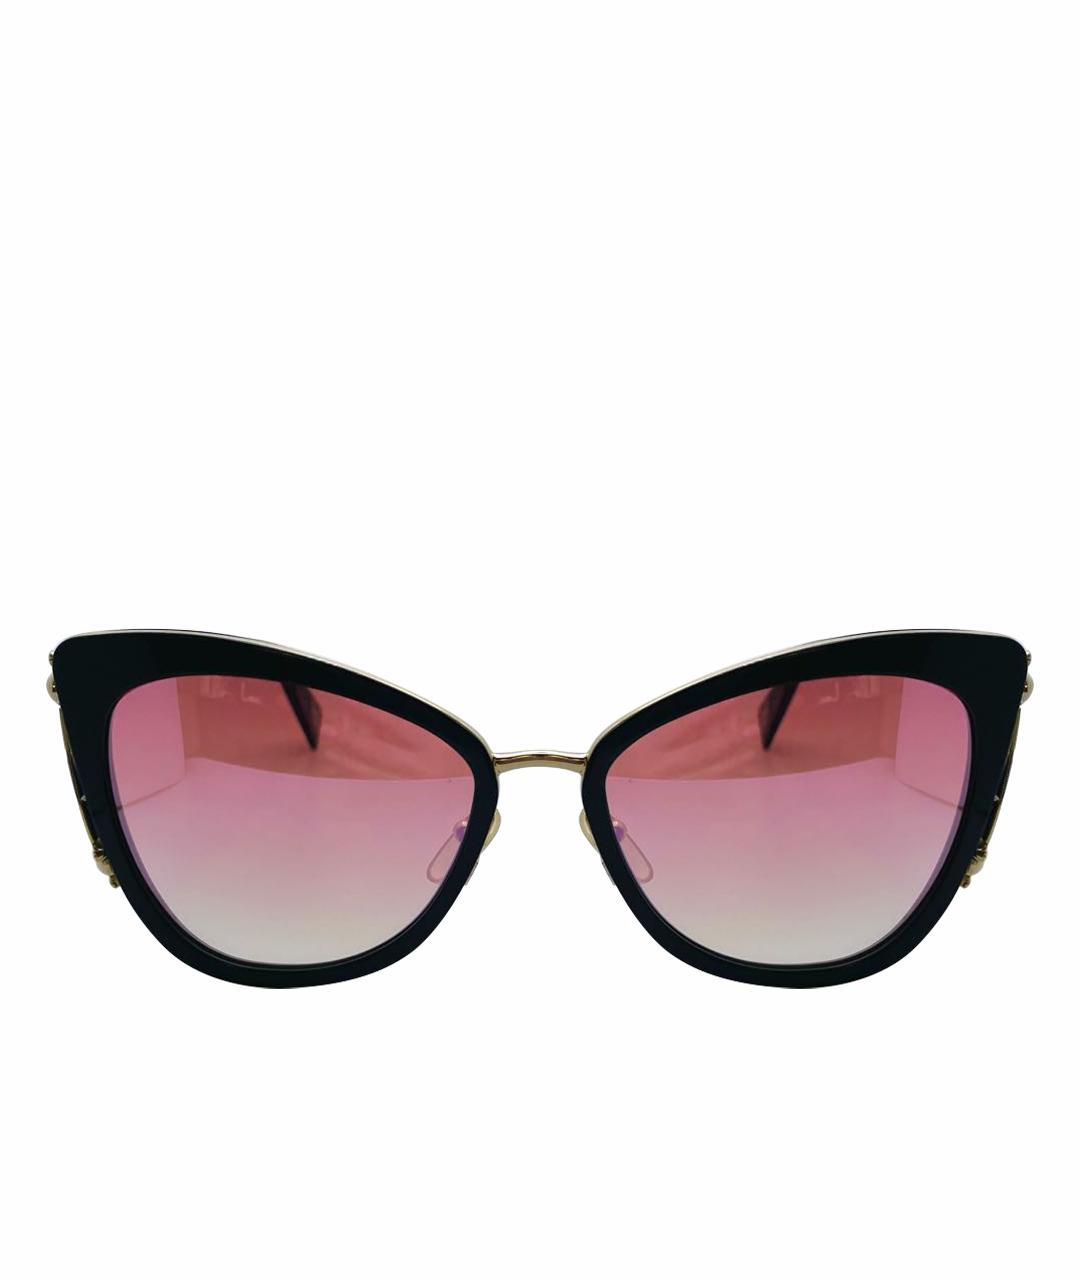 MARC BY MARC JACOBS Розовые пластиковые солнцезащитные очки, фото 1